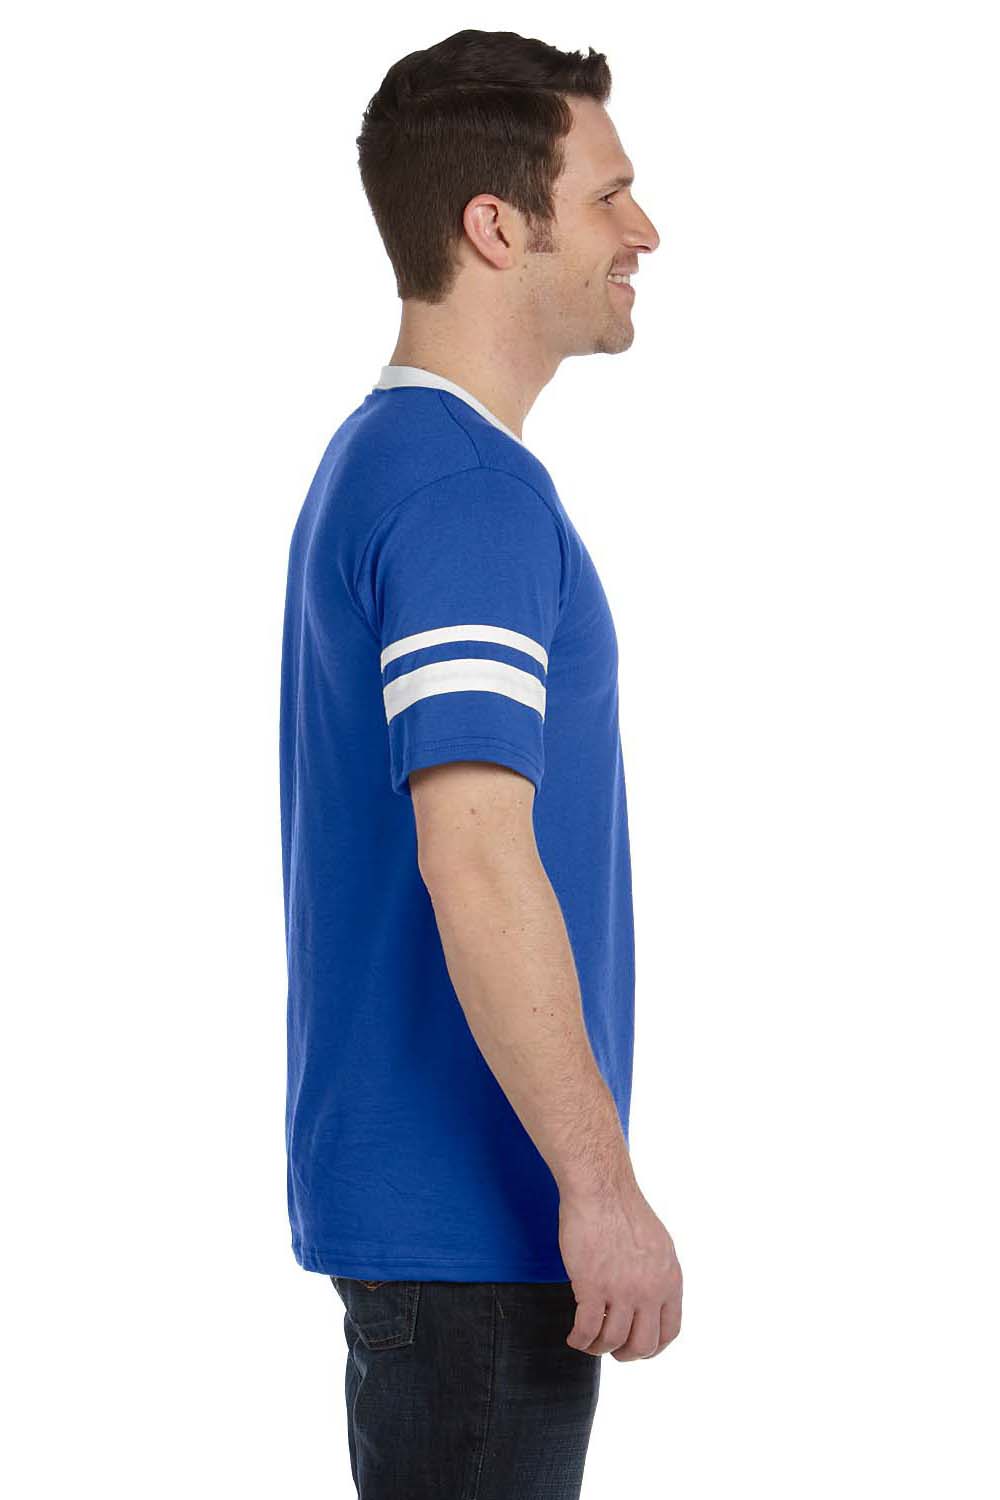 Augusta Sportswear 360 Mens Short Sleeve V-Neck T-Shirt Royal Blue/White Model Side